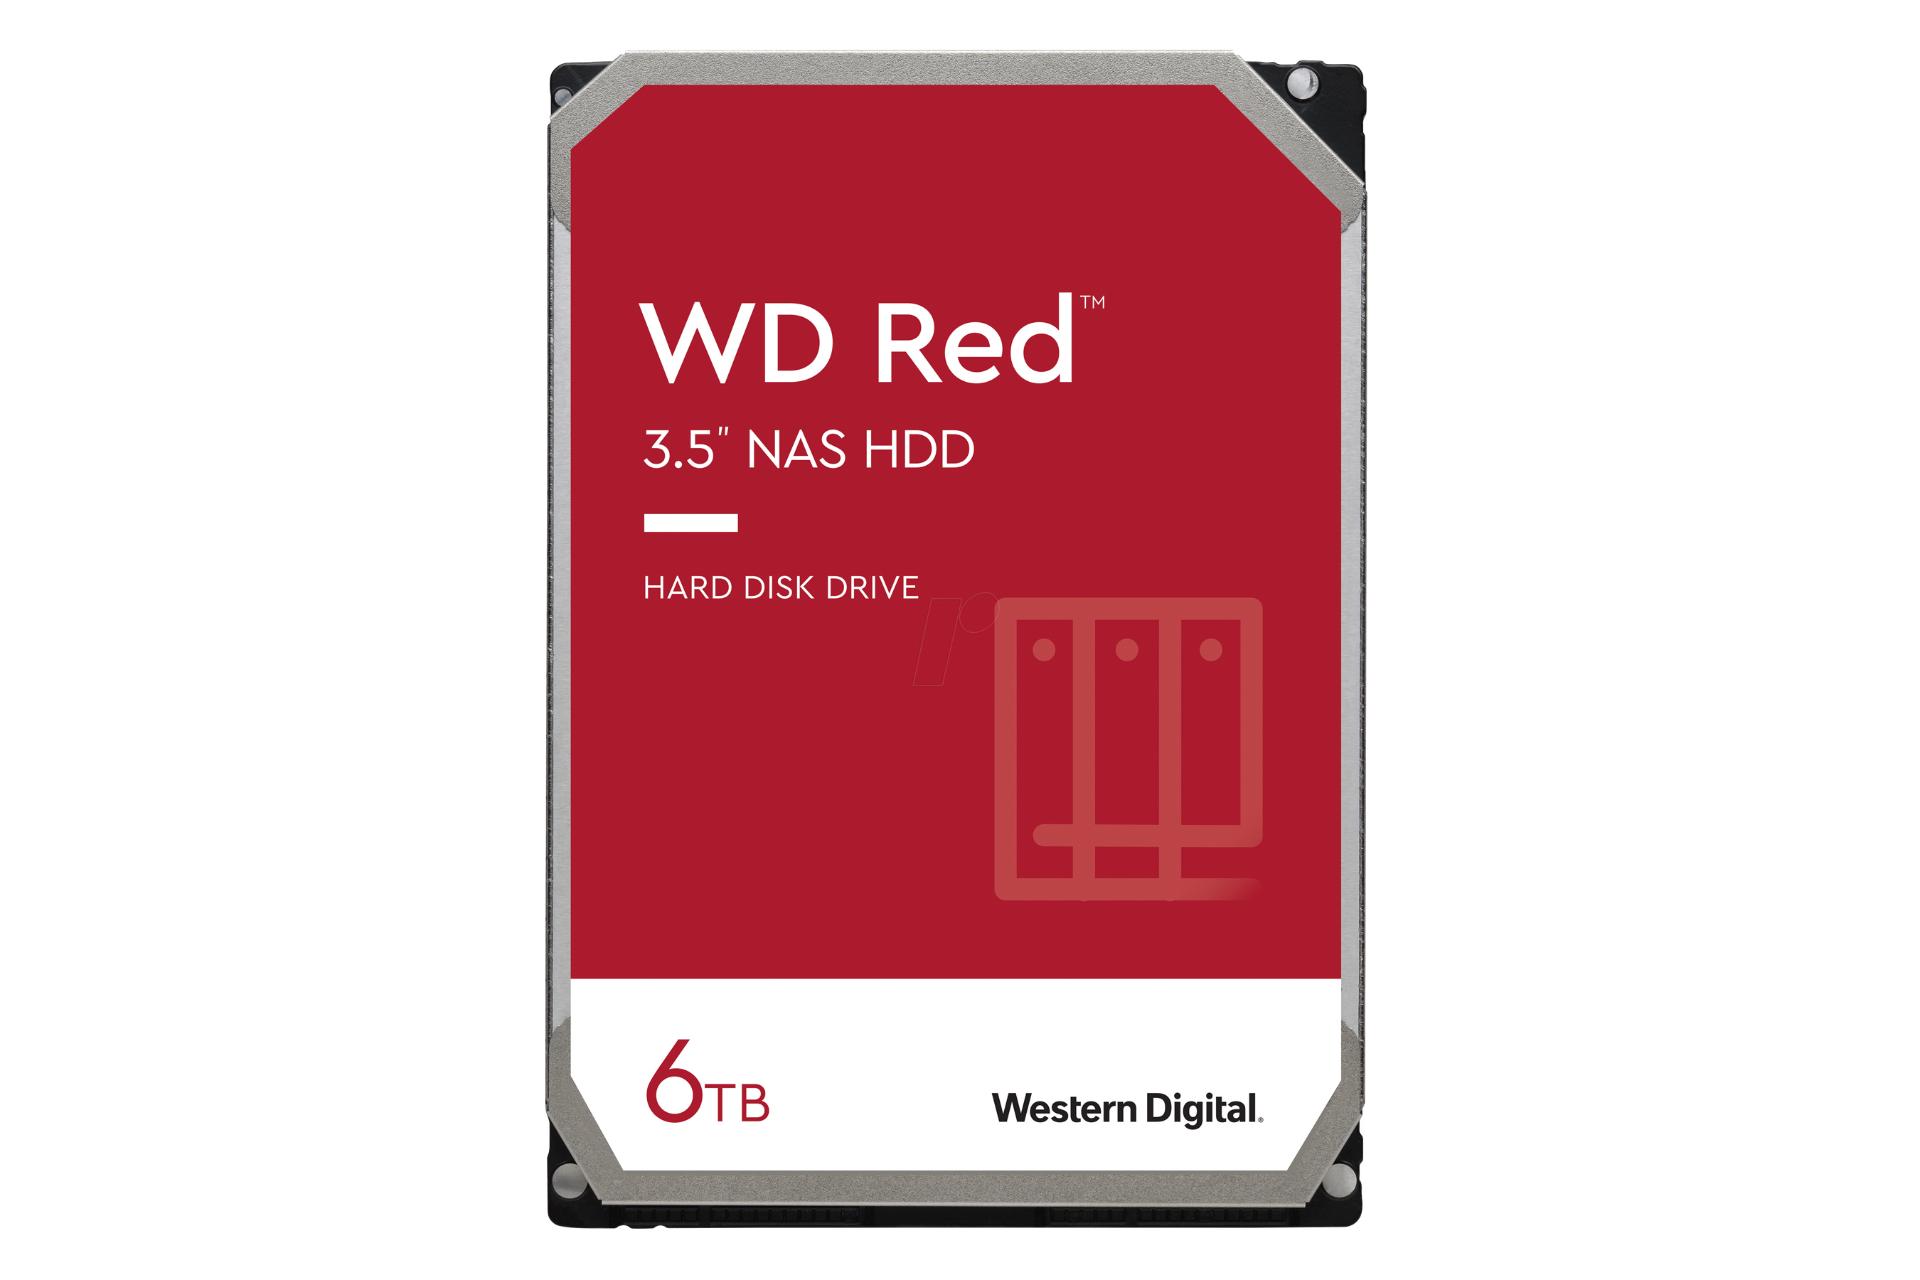 مرجع متخصصين ايران نماي روبرو هارد ديسك وسترن ديجيتال Red Plus WD60EFZX ظرفيت 6 ترابايت